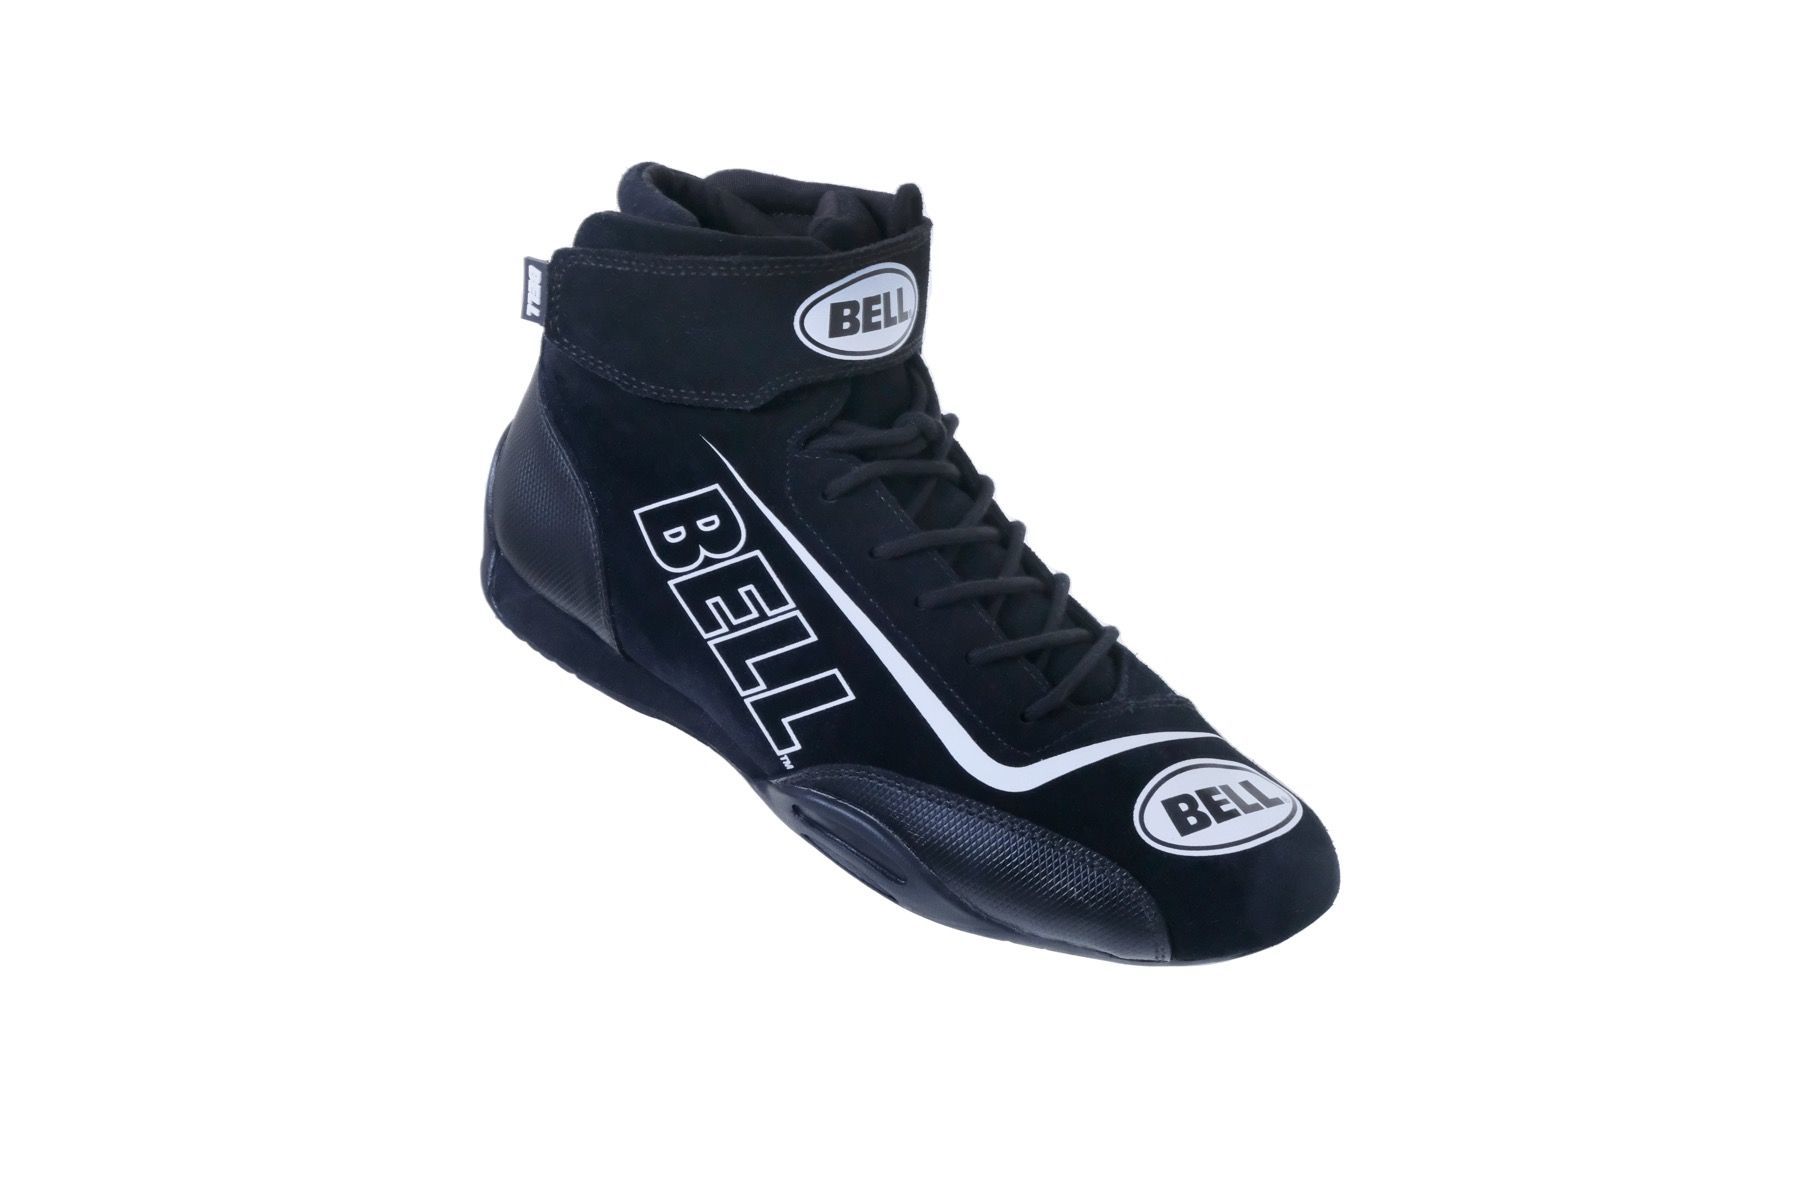 Bell Sport-TX Shoe Black 11 Sfi 3.3/5 - BR30021